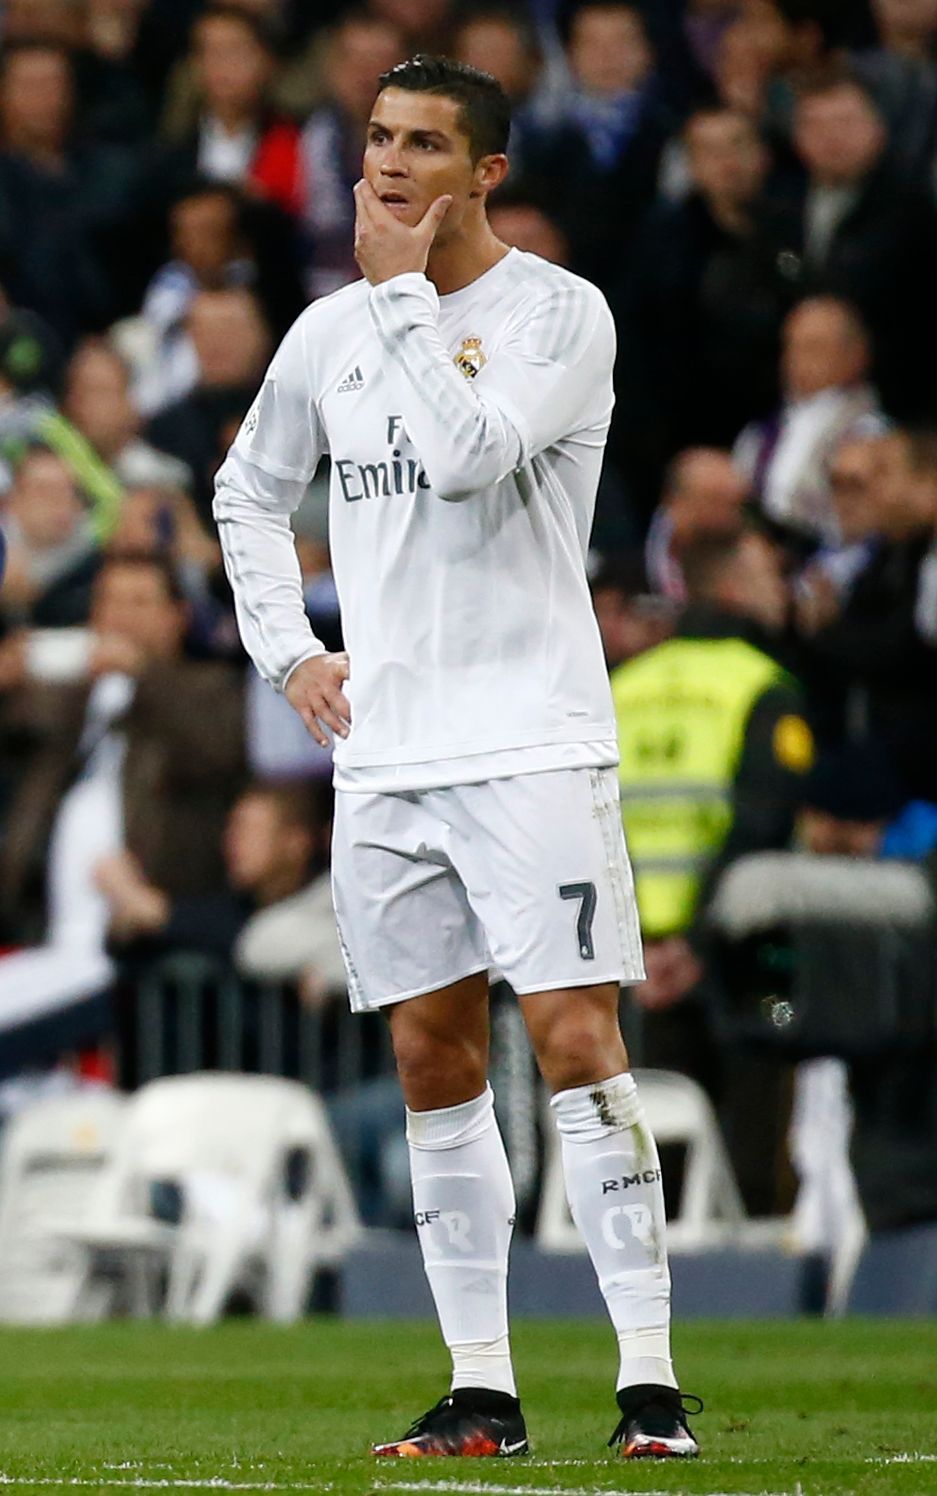 Real Madrid-Barcelona: Cristiano Ronaldo